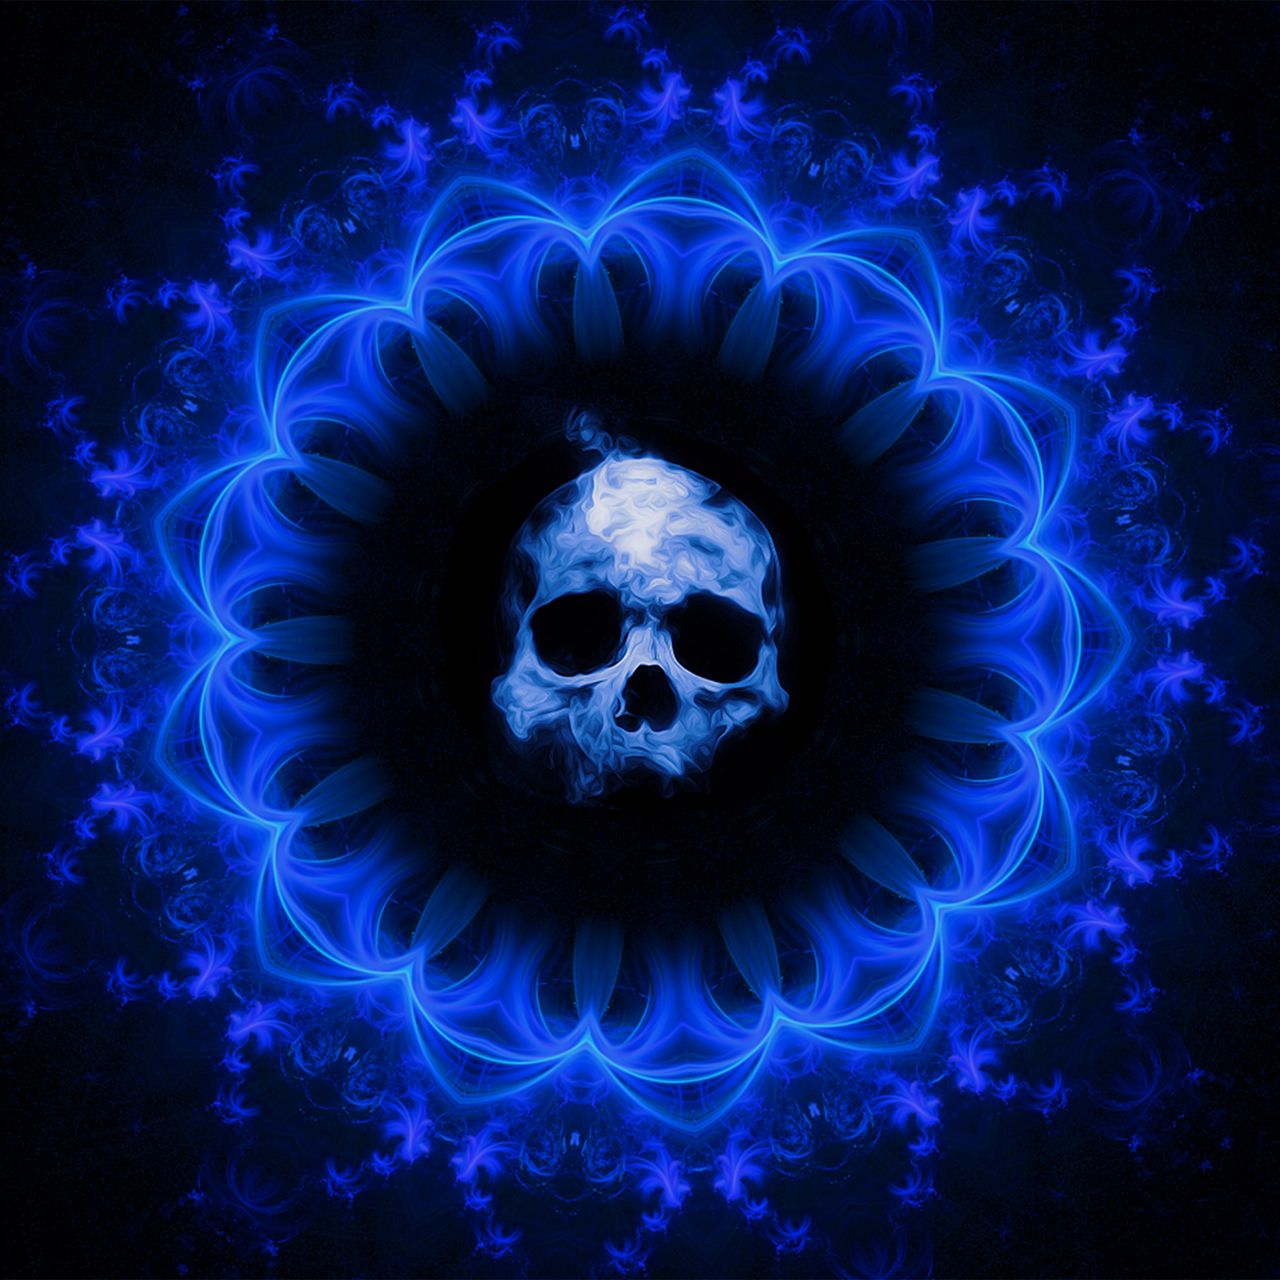 Download wallpaper 1280x1280 skull, gothic, patterns, blue, dark background  ipad, ipad 2, ipad mini for parallax hd background